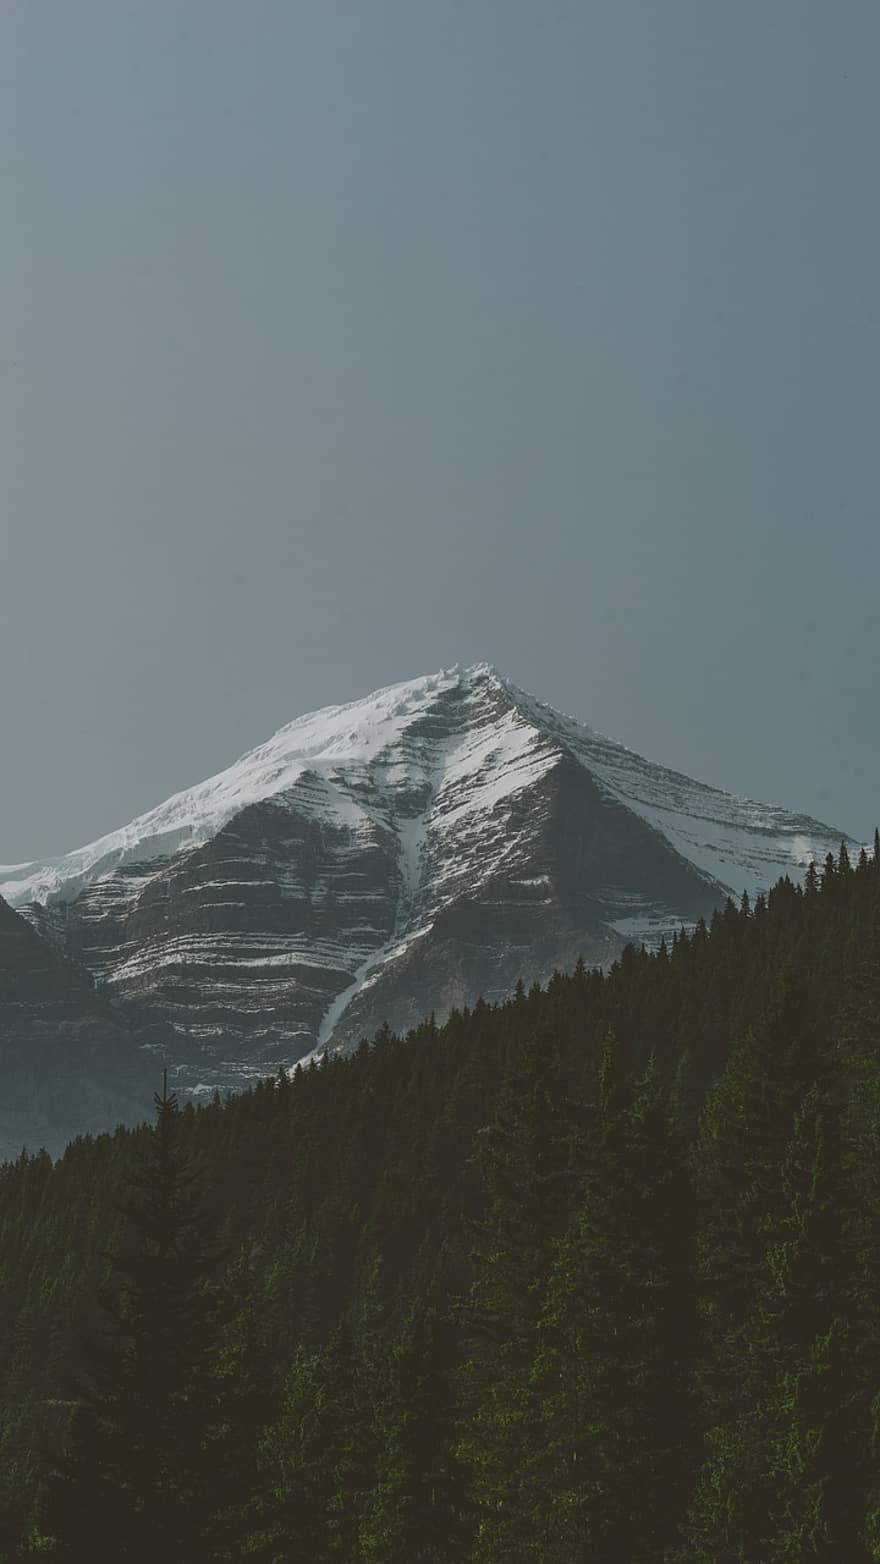 Montagne, forêt, de pointe, sommet, neige, couvert de neige, paysage, campagne, la nature, Mount Robson, banff